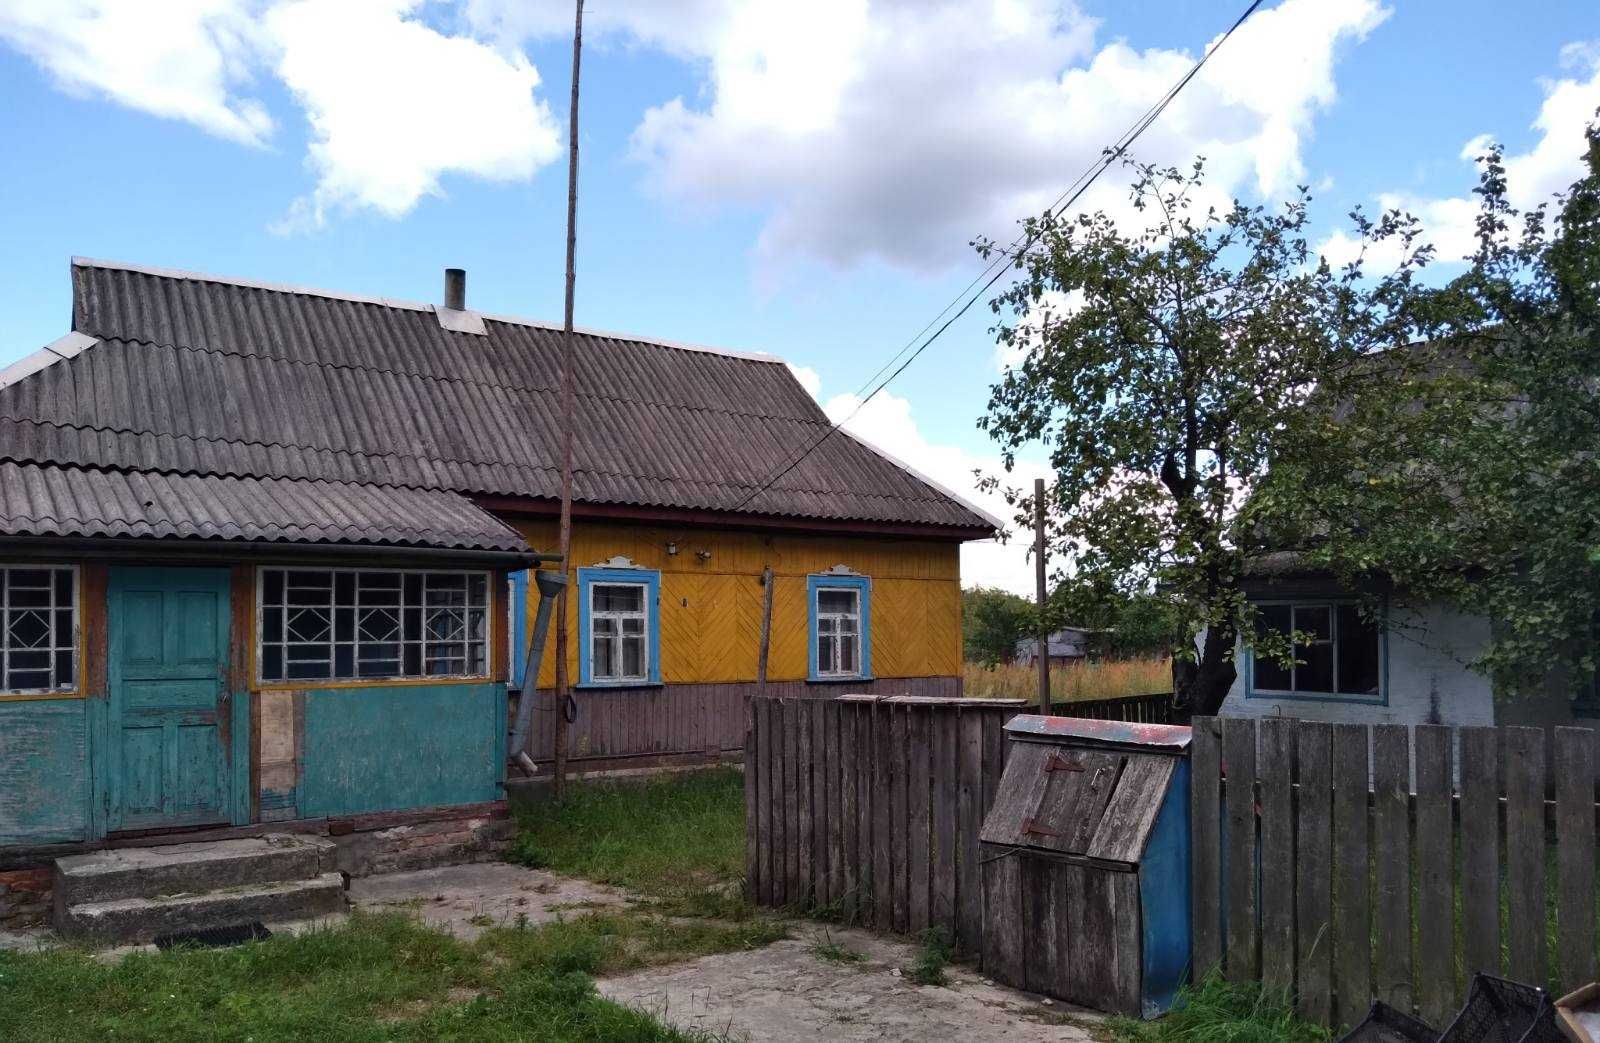 Володимирівка, будинок з бруса, 62 кв.м. Поруч ліс